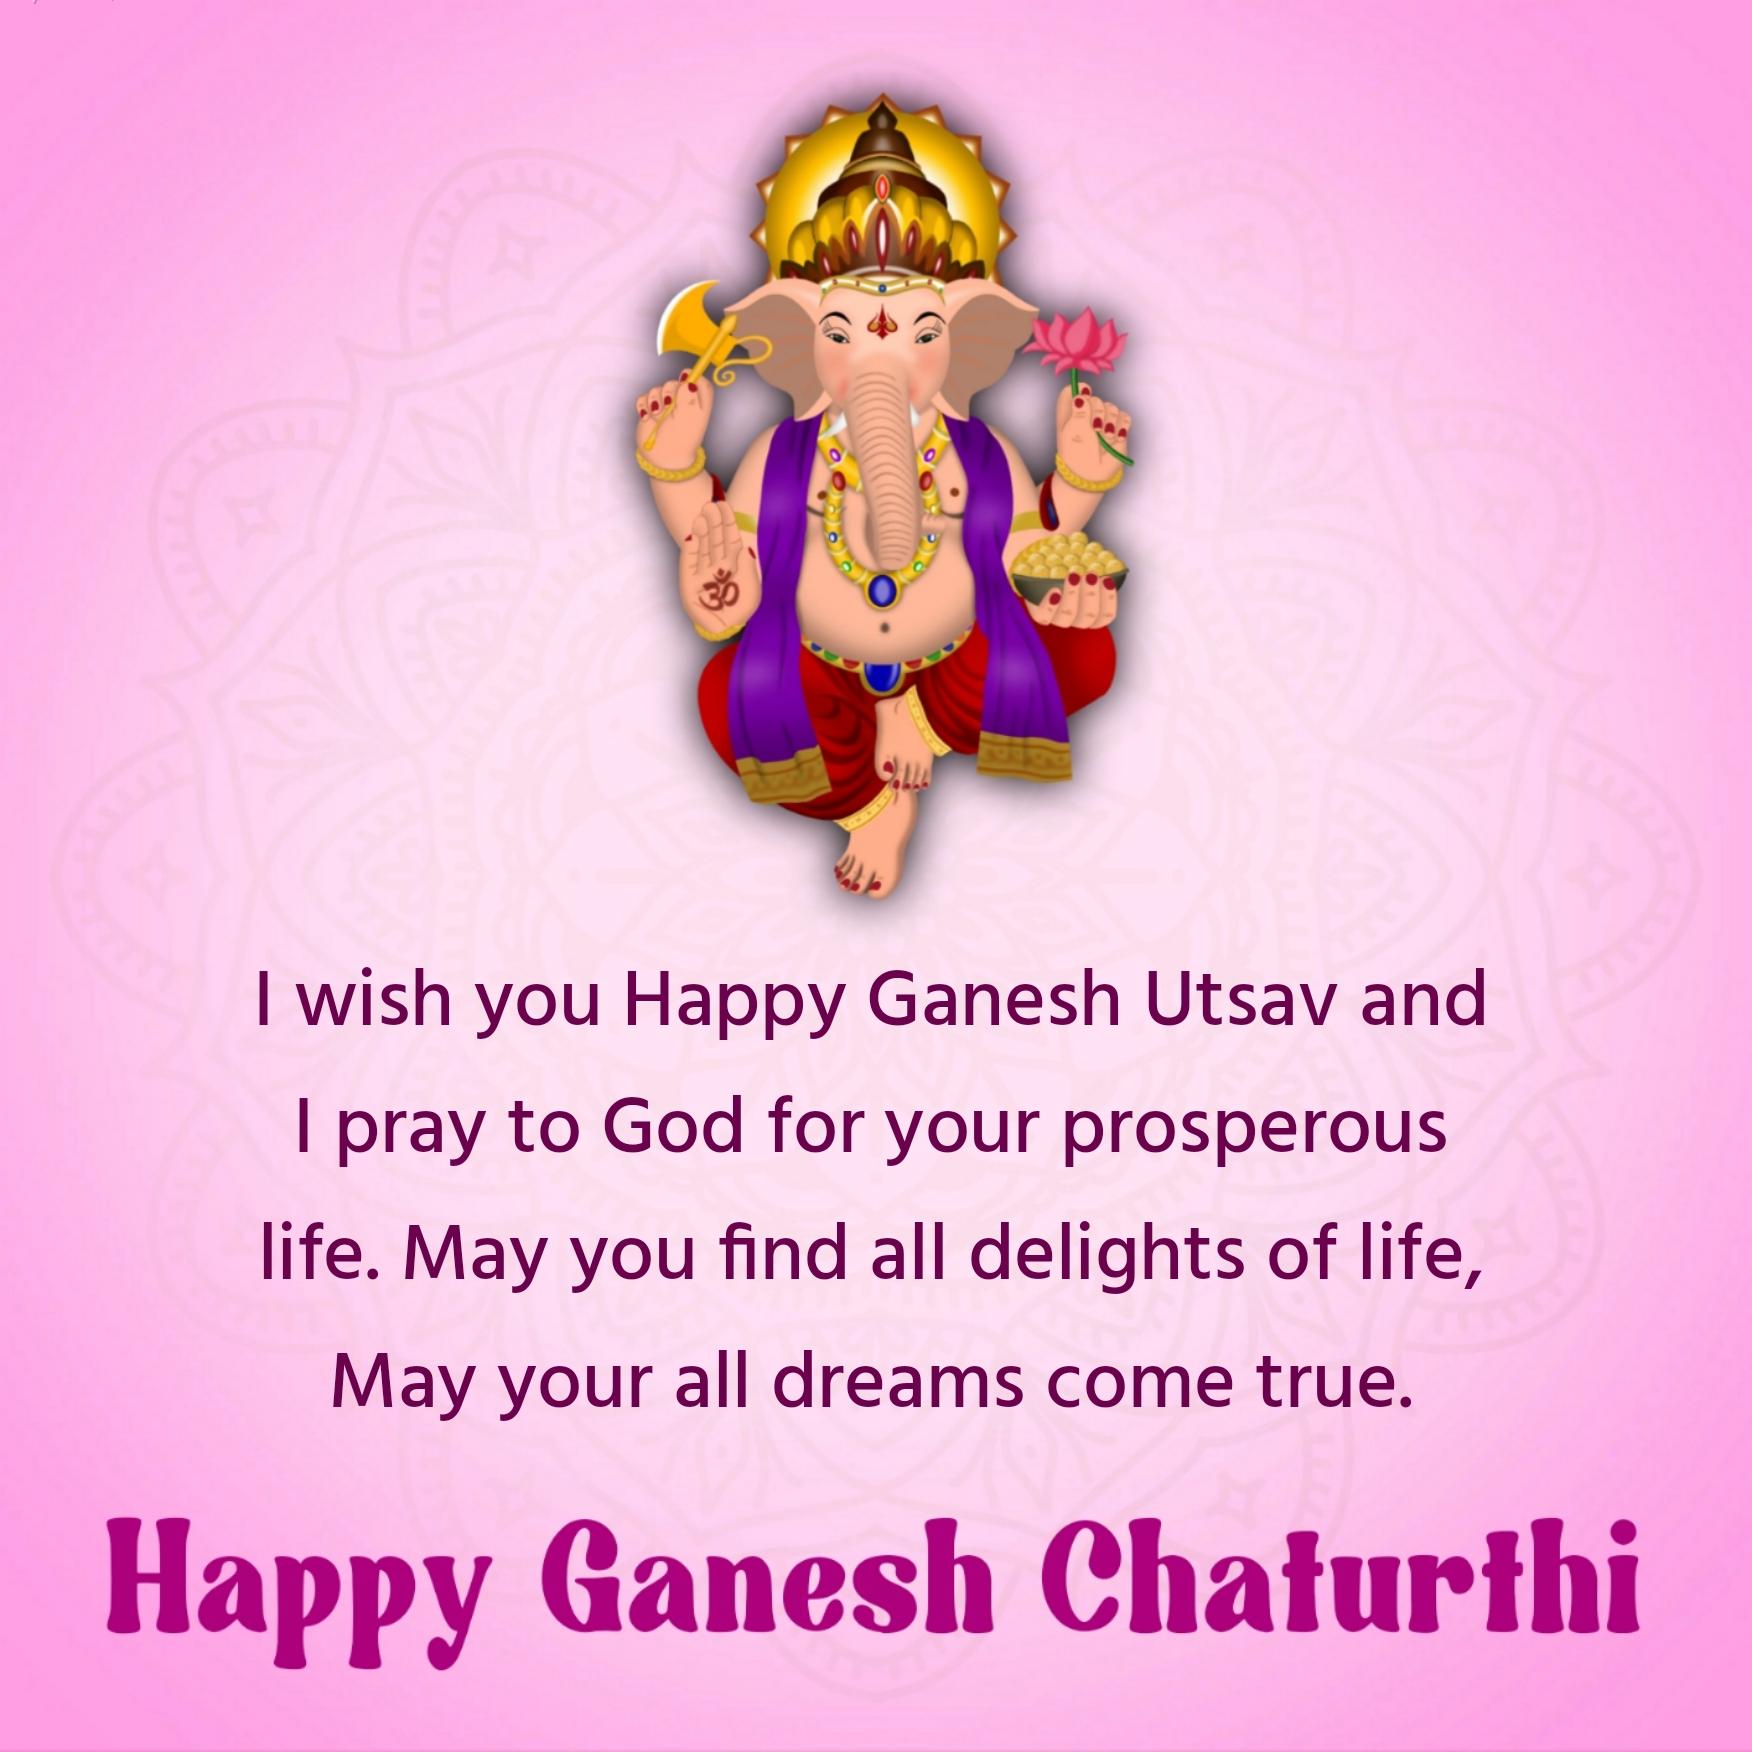 I wish you Happy Ganesh Utsav and I pray to God